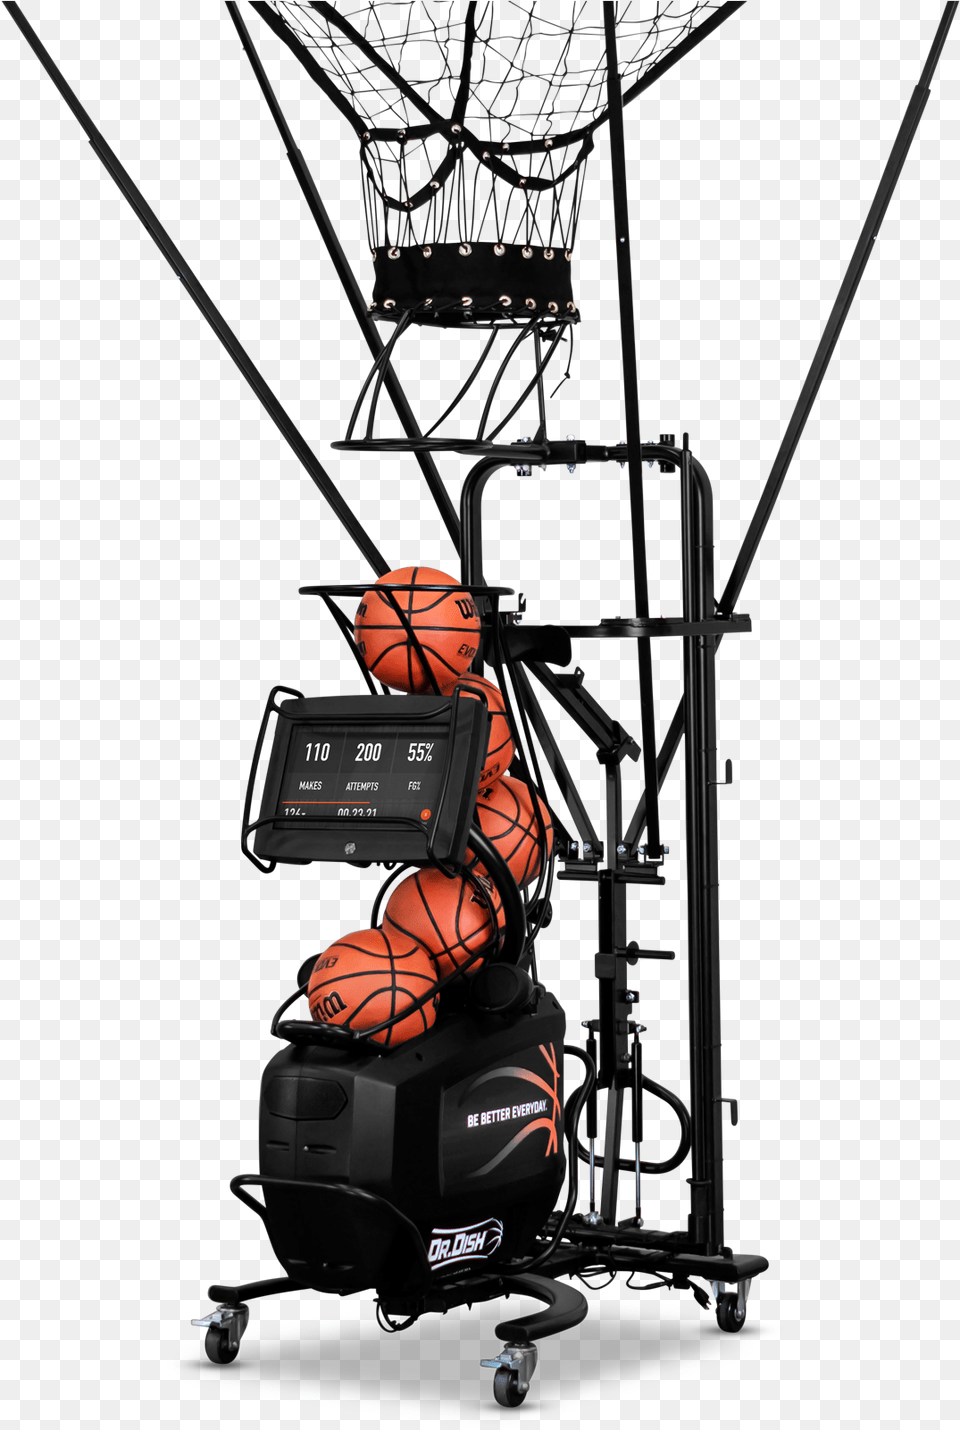 Dr Dish Shooting Machine, Ball, Basketball, Basketball (ball), Sport Free Png